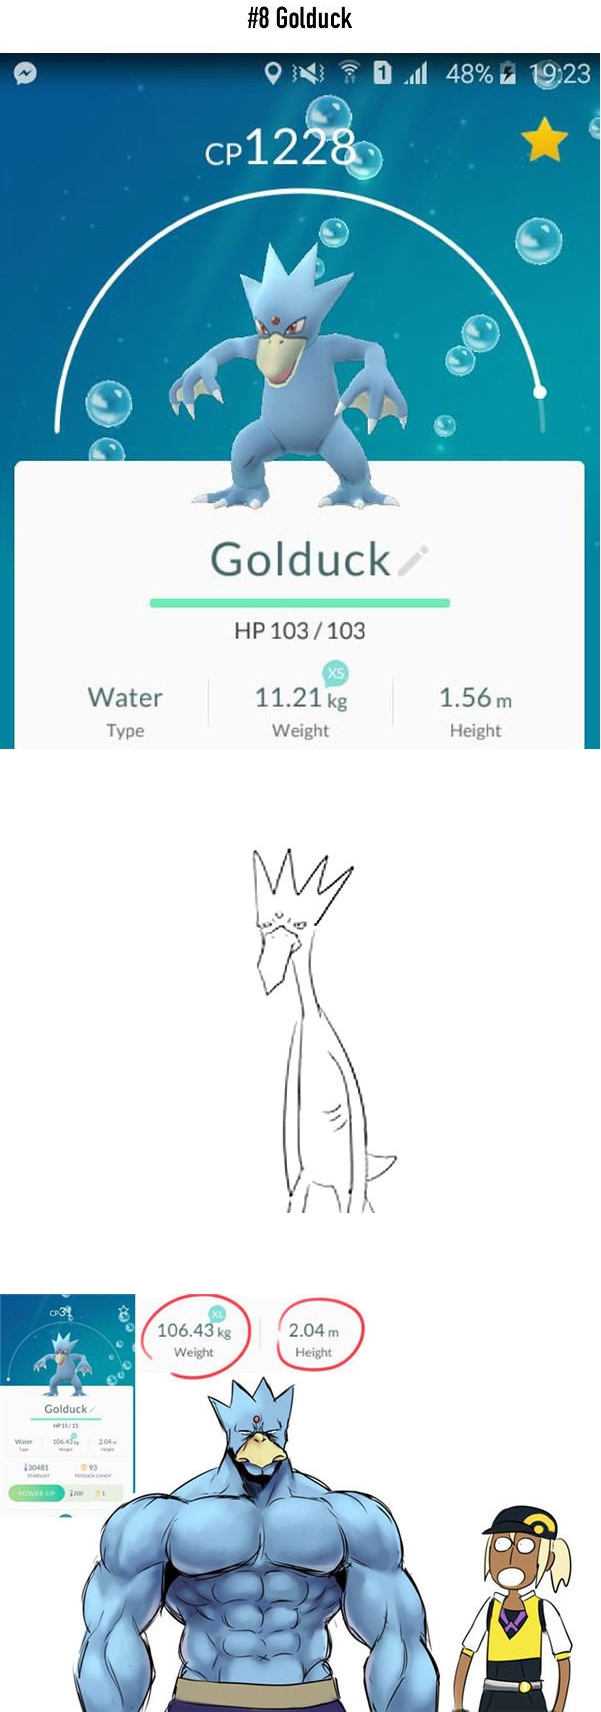 
Golduck cũng không khá khẩm hơn, từ một Pokemon dài thượt mà ốm nhom thì anh chàng bỗng trở thành... lực sĩ với chiều cao 2,04m và nặng 106,43kg.